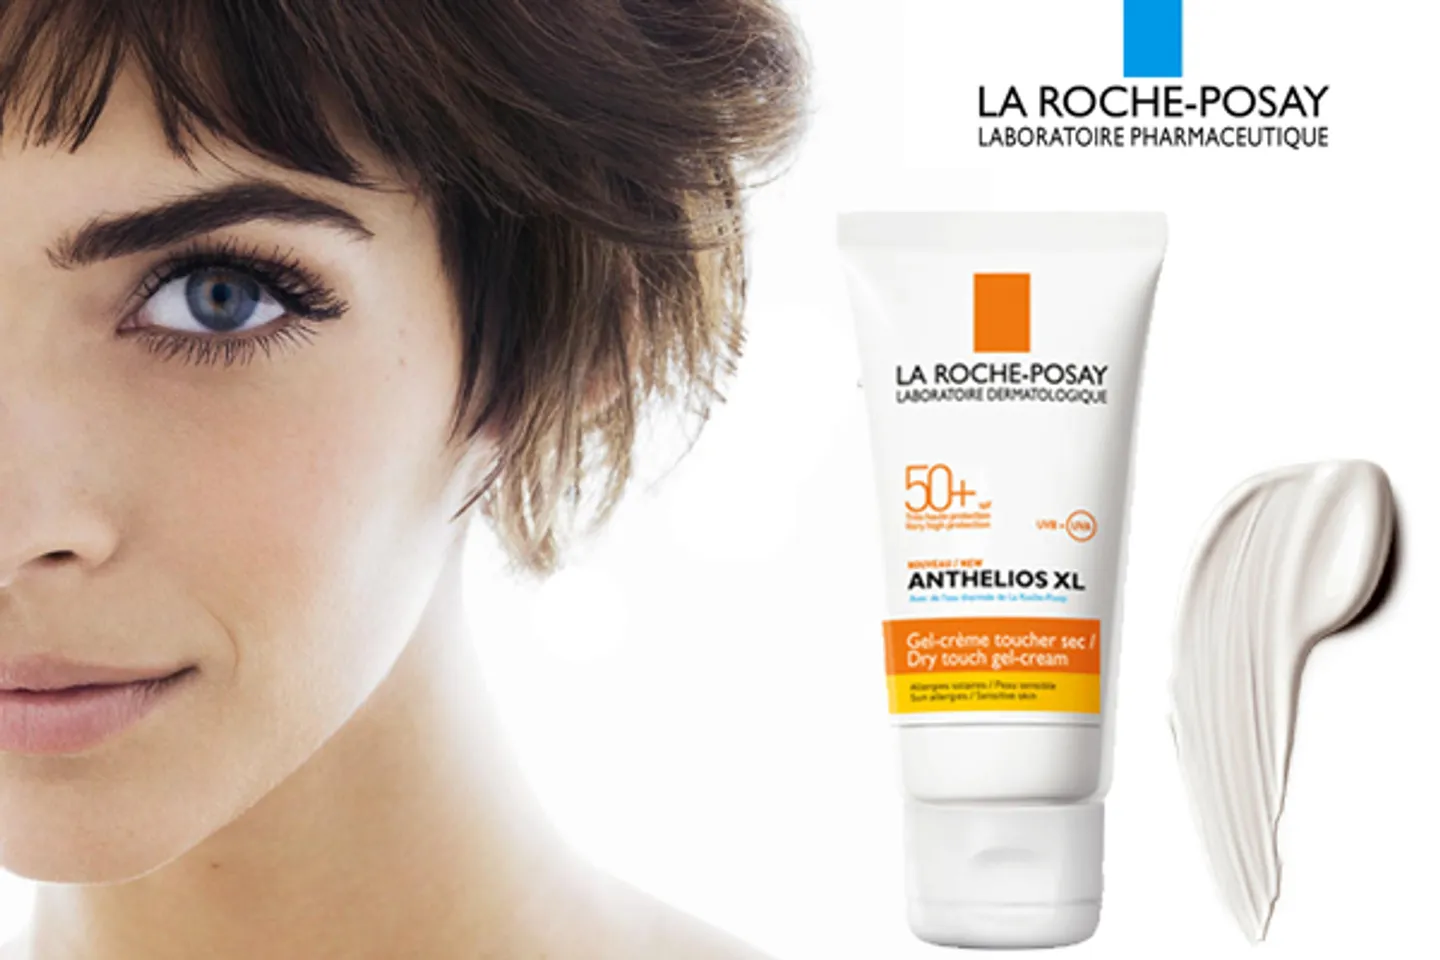 La Roche Posay Anthelios XL SPF 50+ Crème Fondante Teintée chống nắng hiệu quả và an toàn với sức khỏe làn da